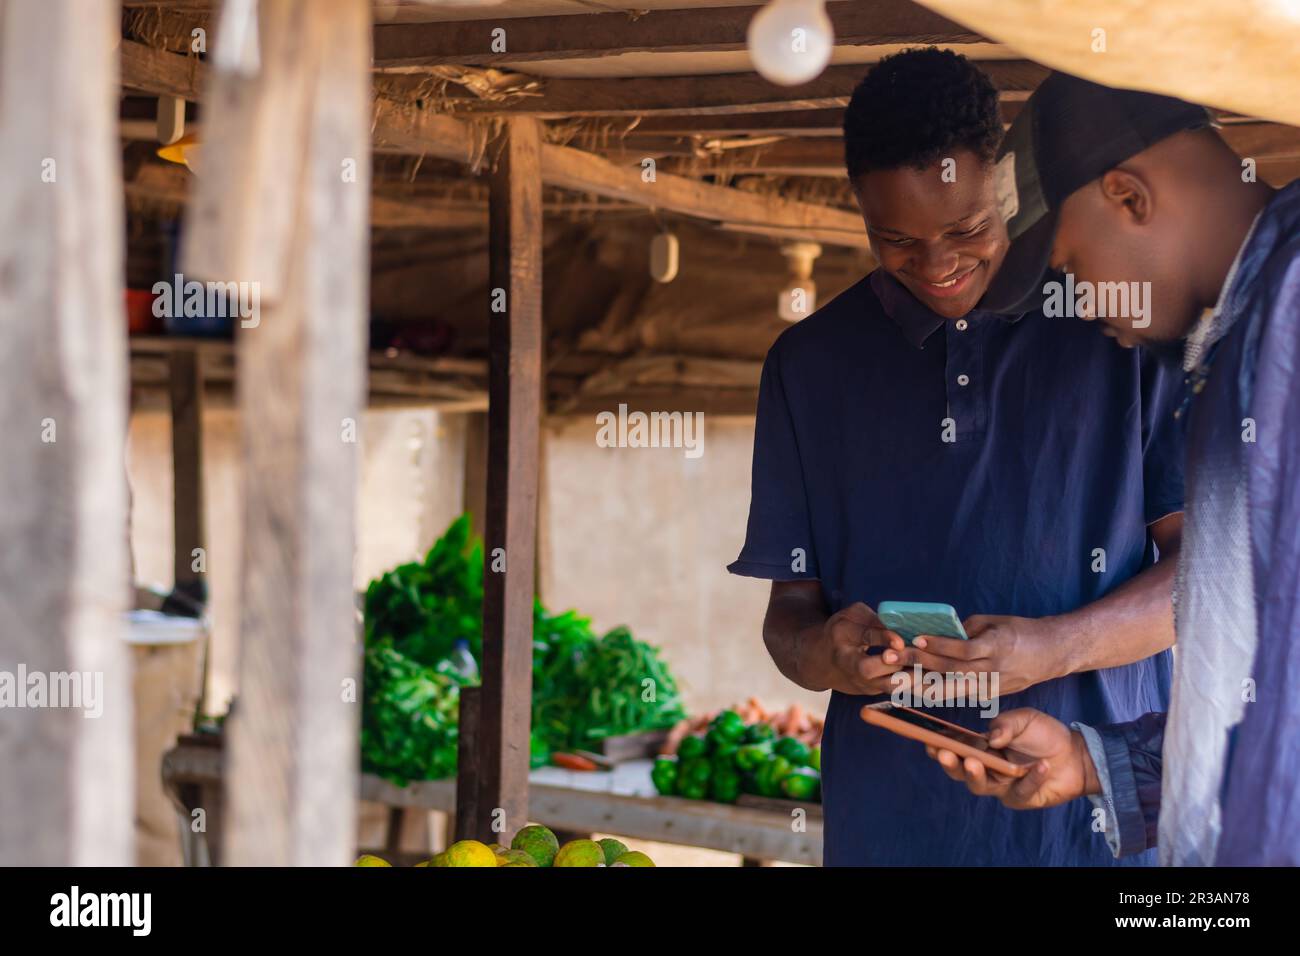 Afrikanischer Marktmann und Kunde, der Transaktionen zur Bezahlung auf einem afrikanischen Markt durchführt, Mann bezahlt Rechnungen. Bargeldloses Policy-Konzept, Internet-Banking Stockfoto